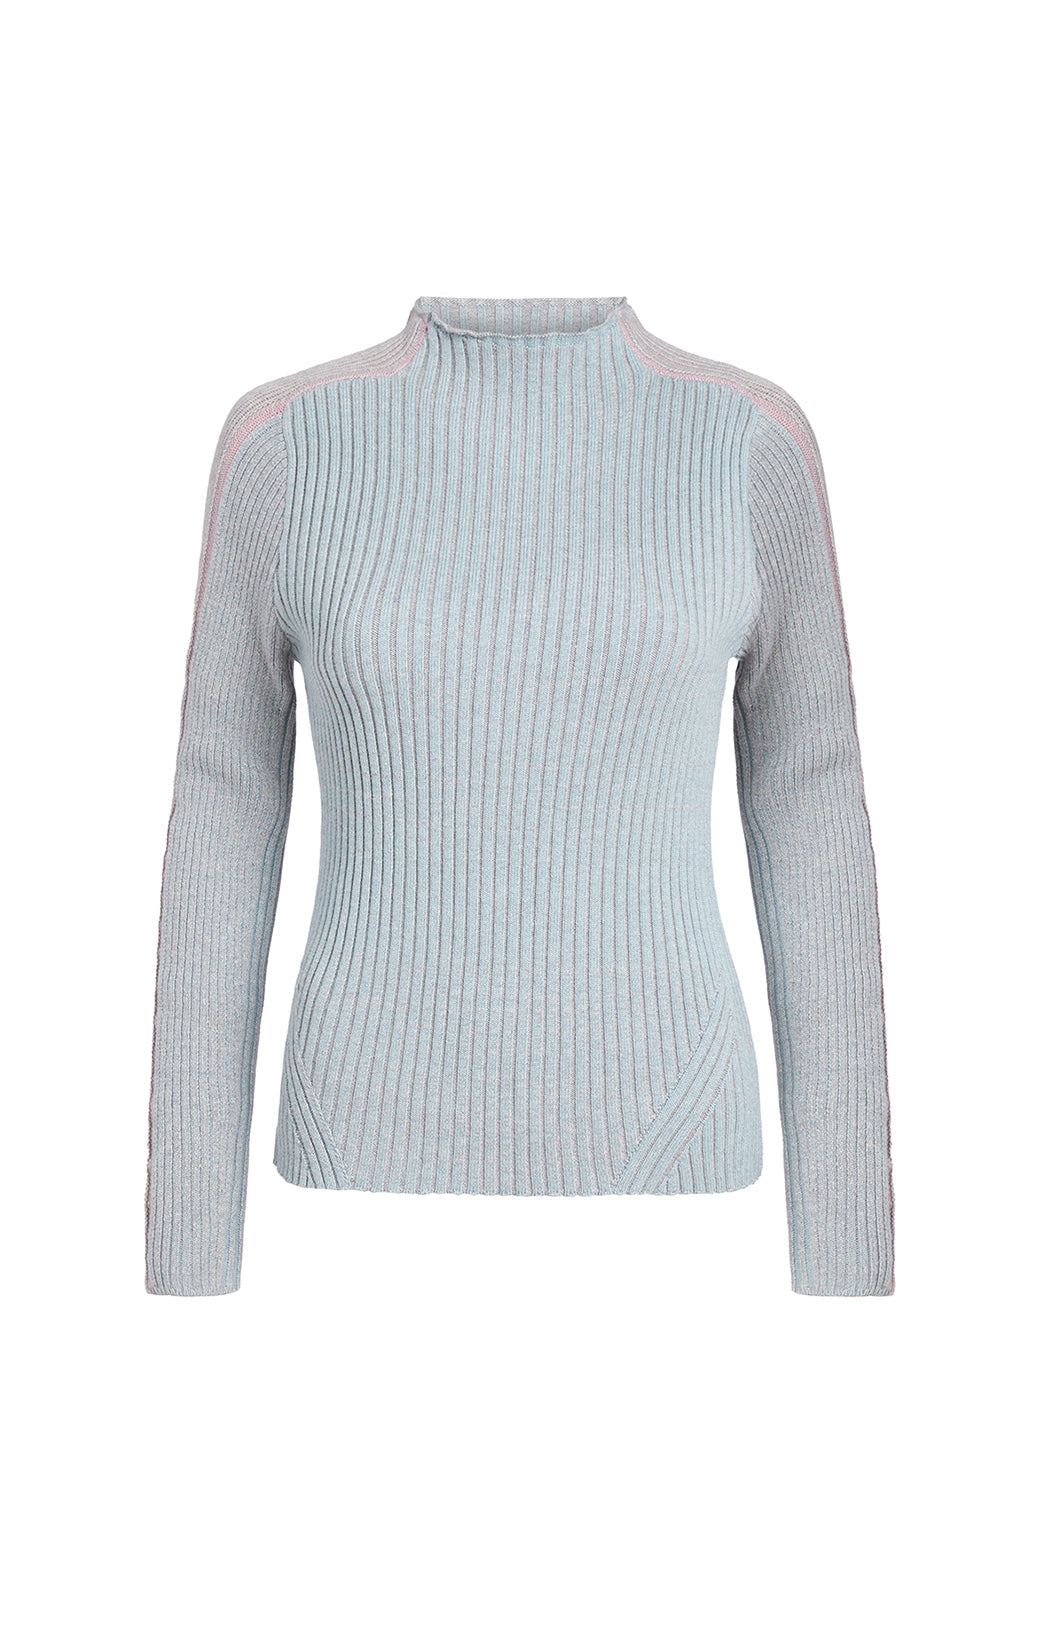 Scandinavia - Mixed-Stitch Scalloped Sweater - Product Image